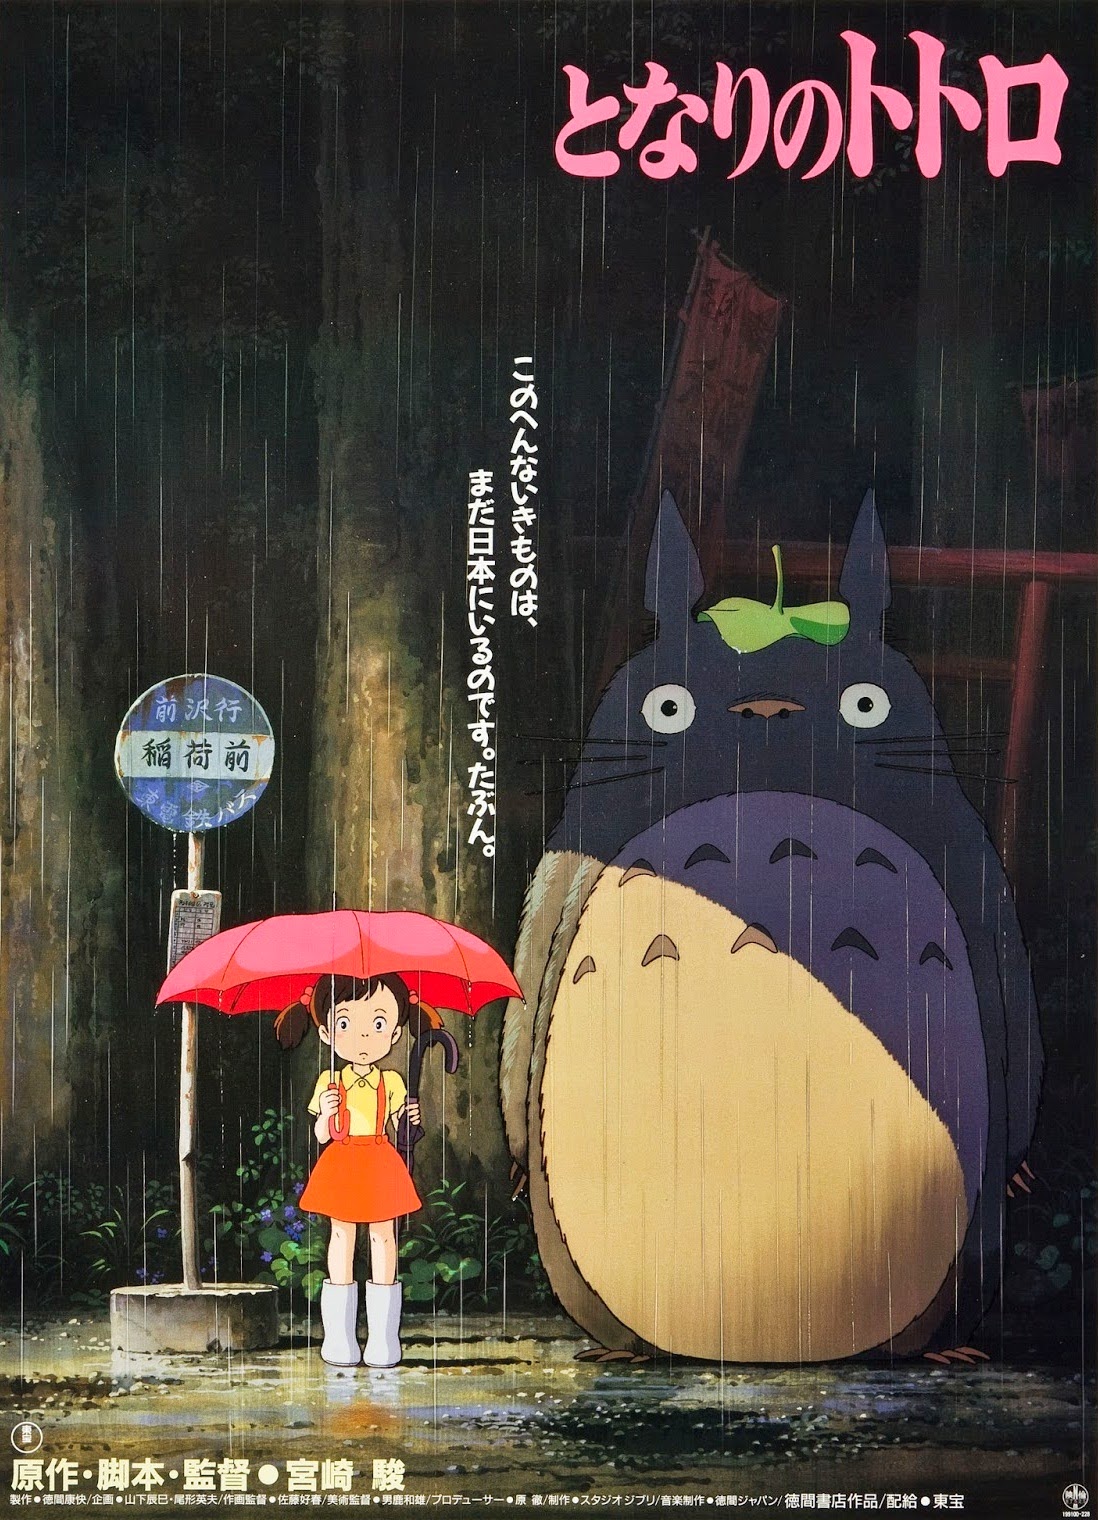 My+Neighbor+Totoro+Poster.jpg